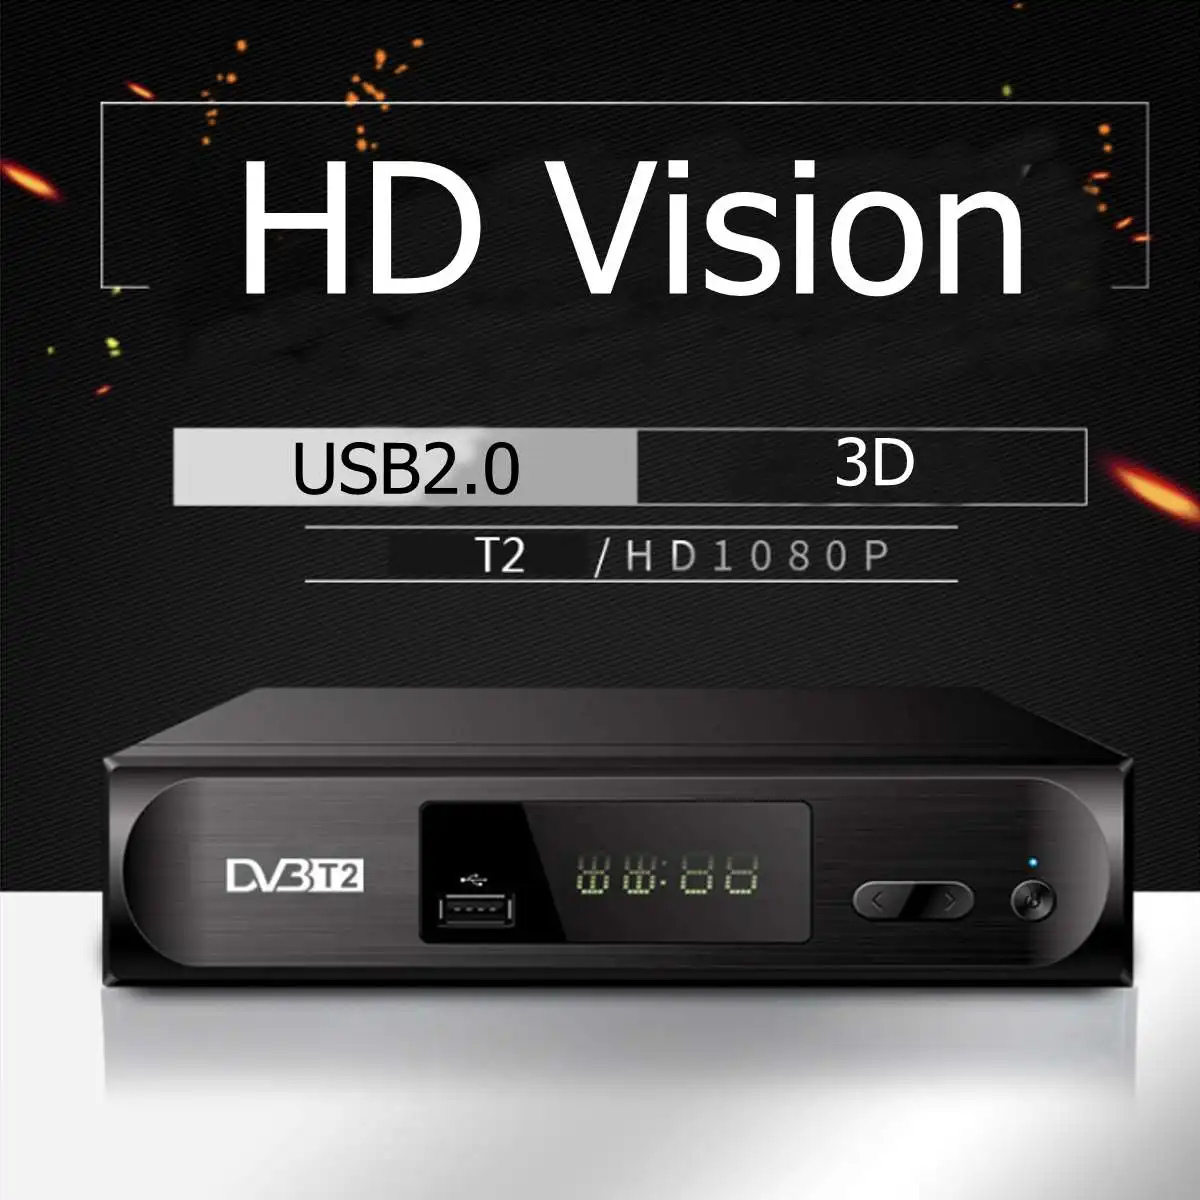 USB2.0 DVB T2 ТВ-тюнер DVB-T2 ресивер Full-HD 1080P цифровой смарт-ТВ-приставка поддержка MPEG H.264 I P tv встроенное руководство на русском языке